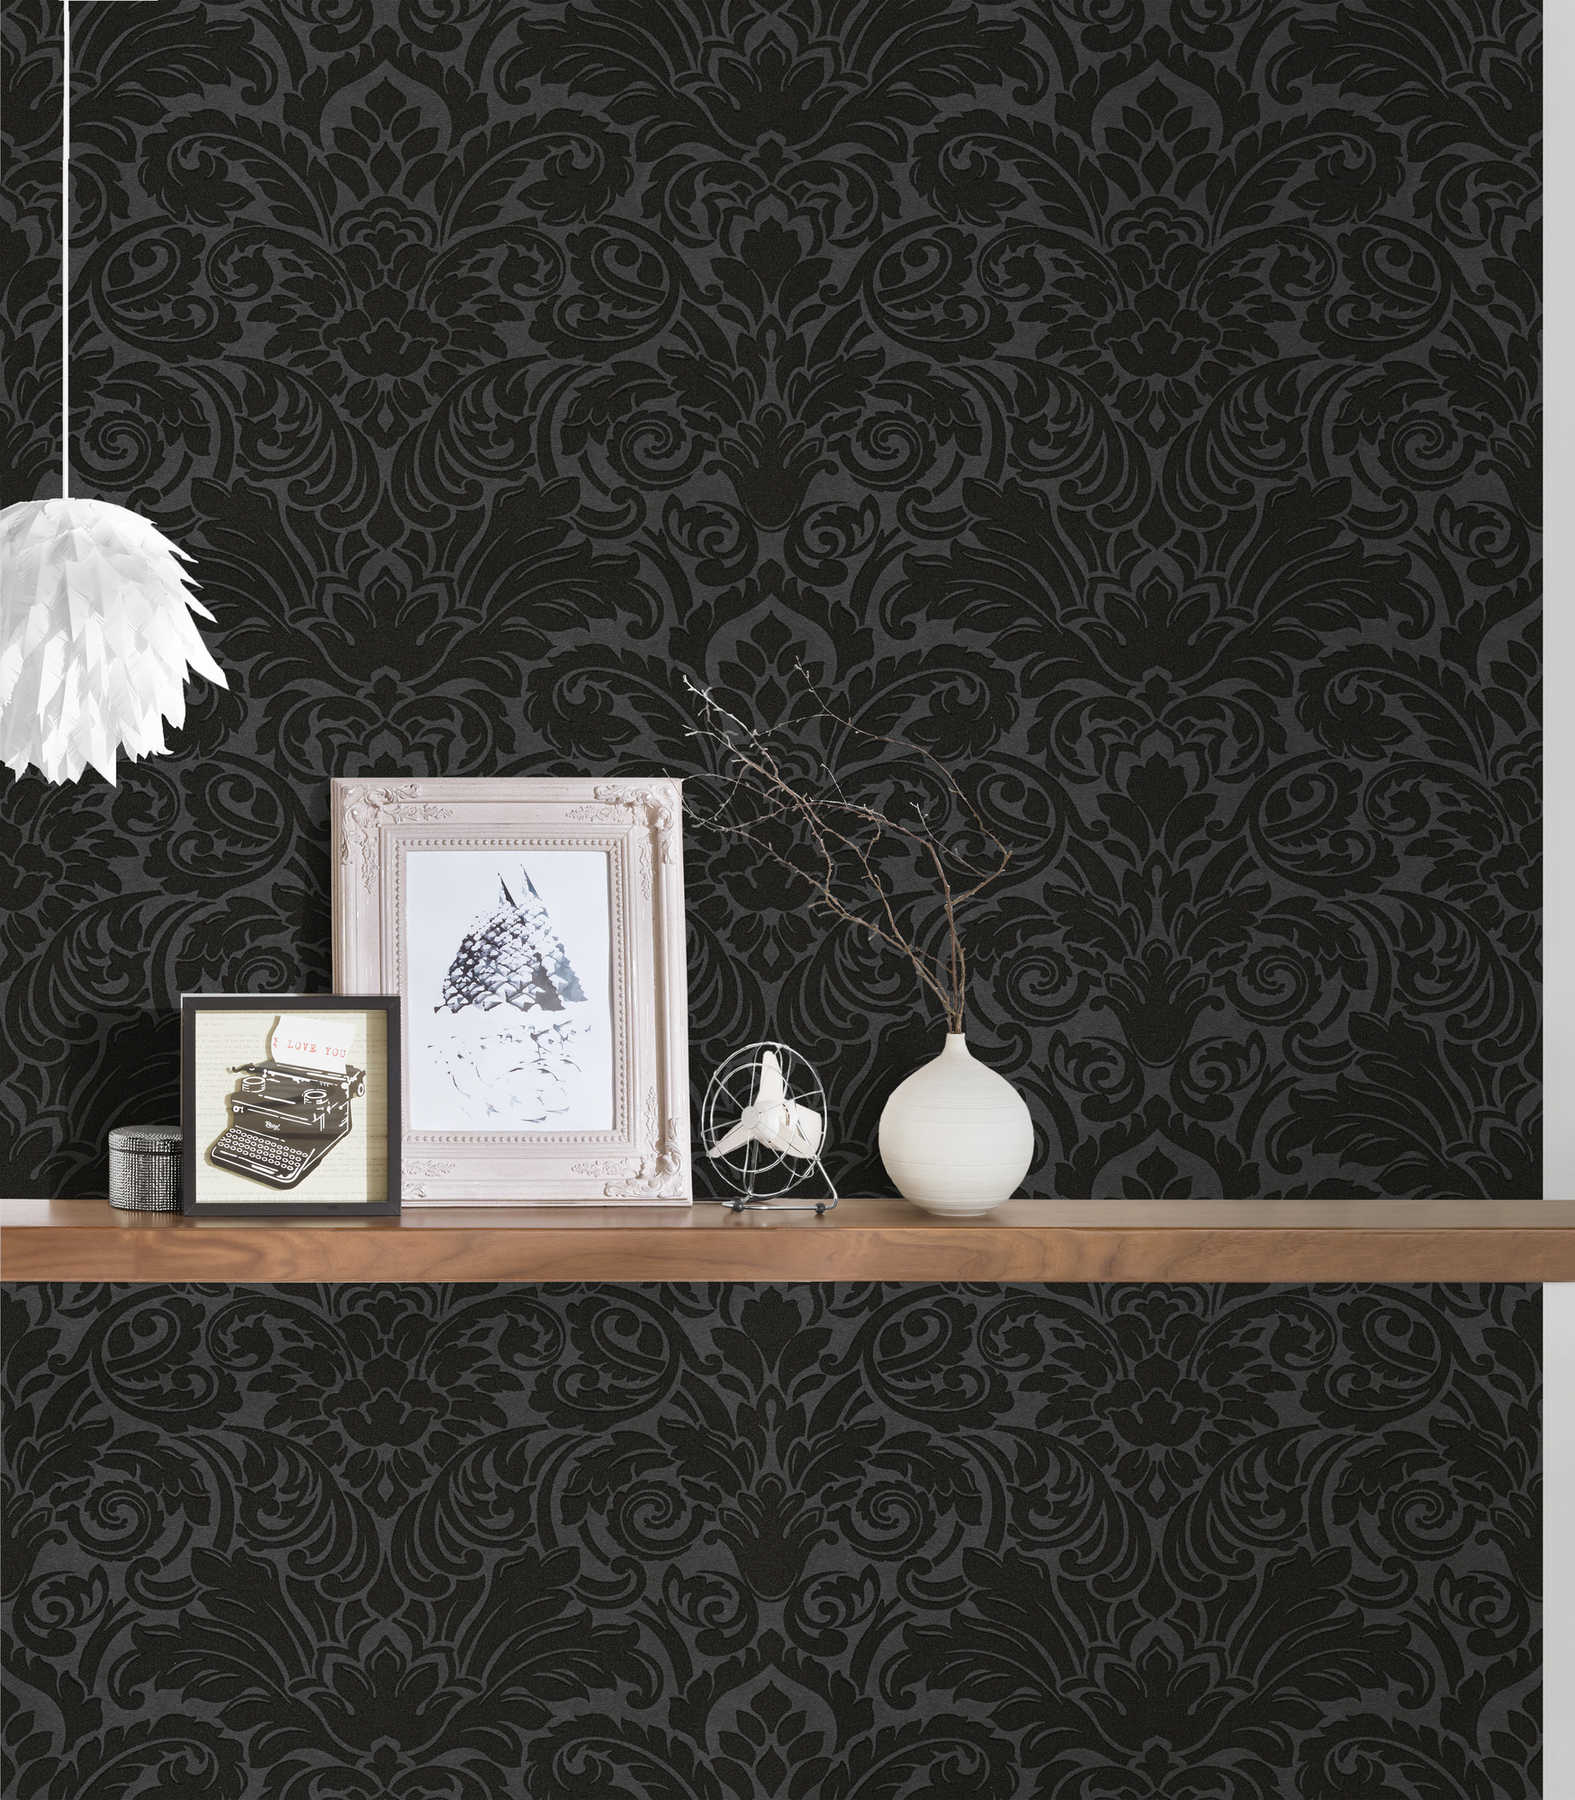             Ornamenteel behang met metallic effect & bloemmotief - zilver, zwart
        